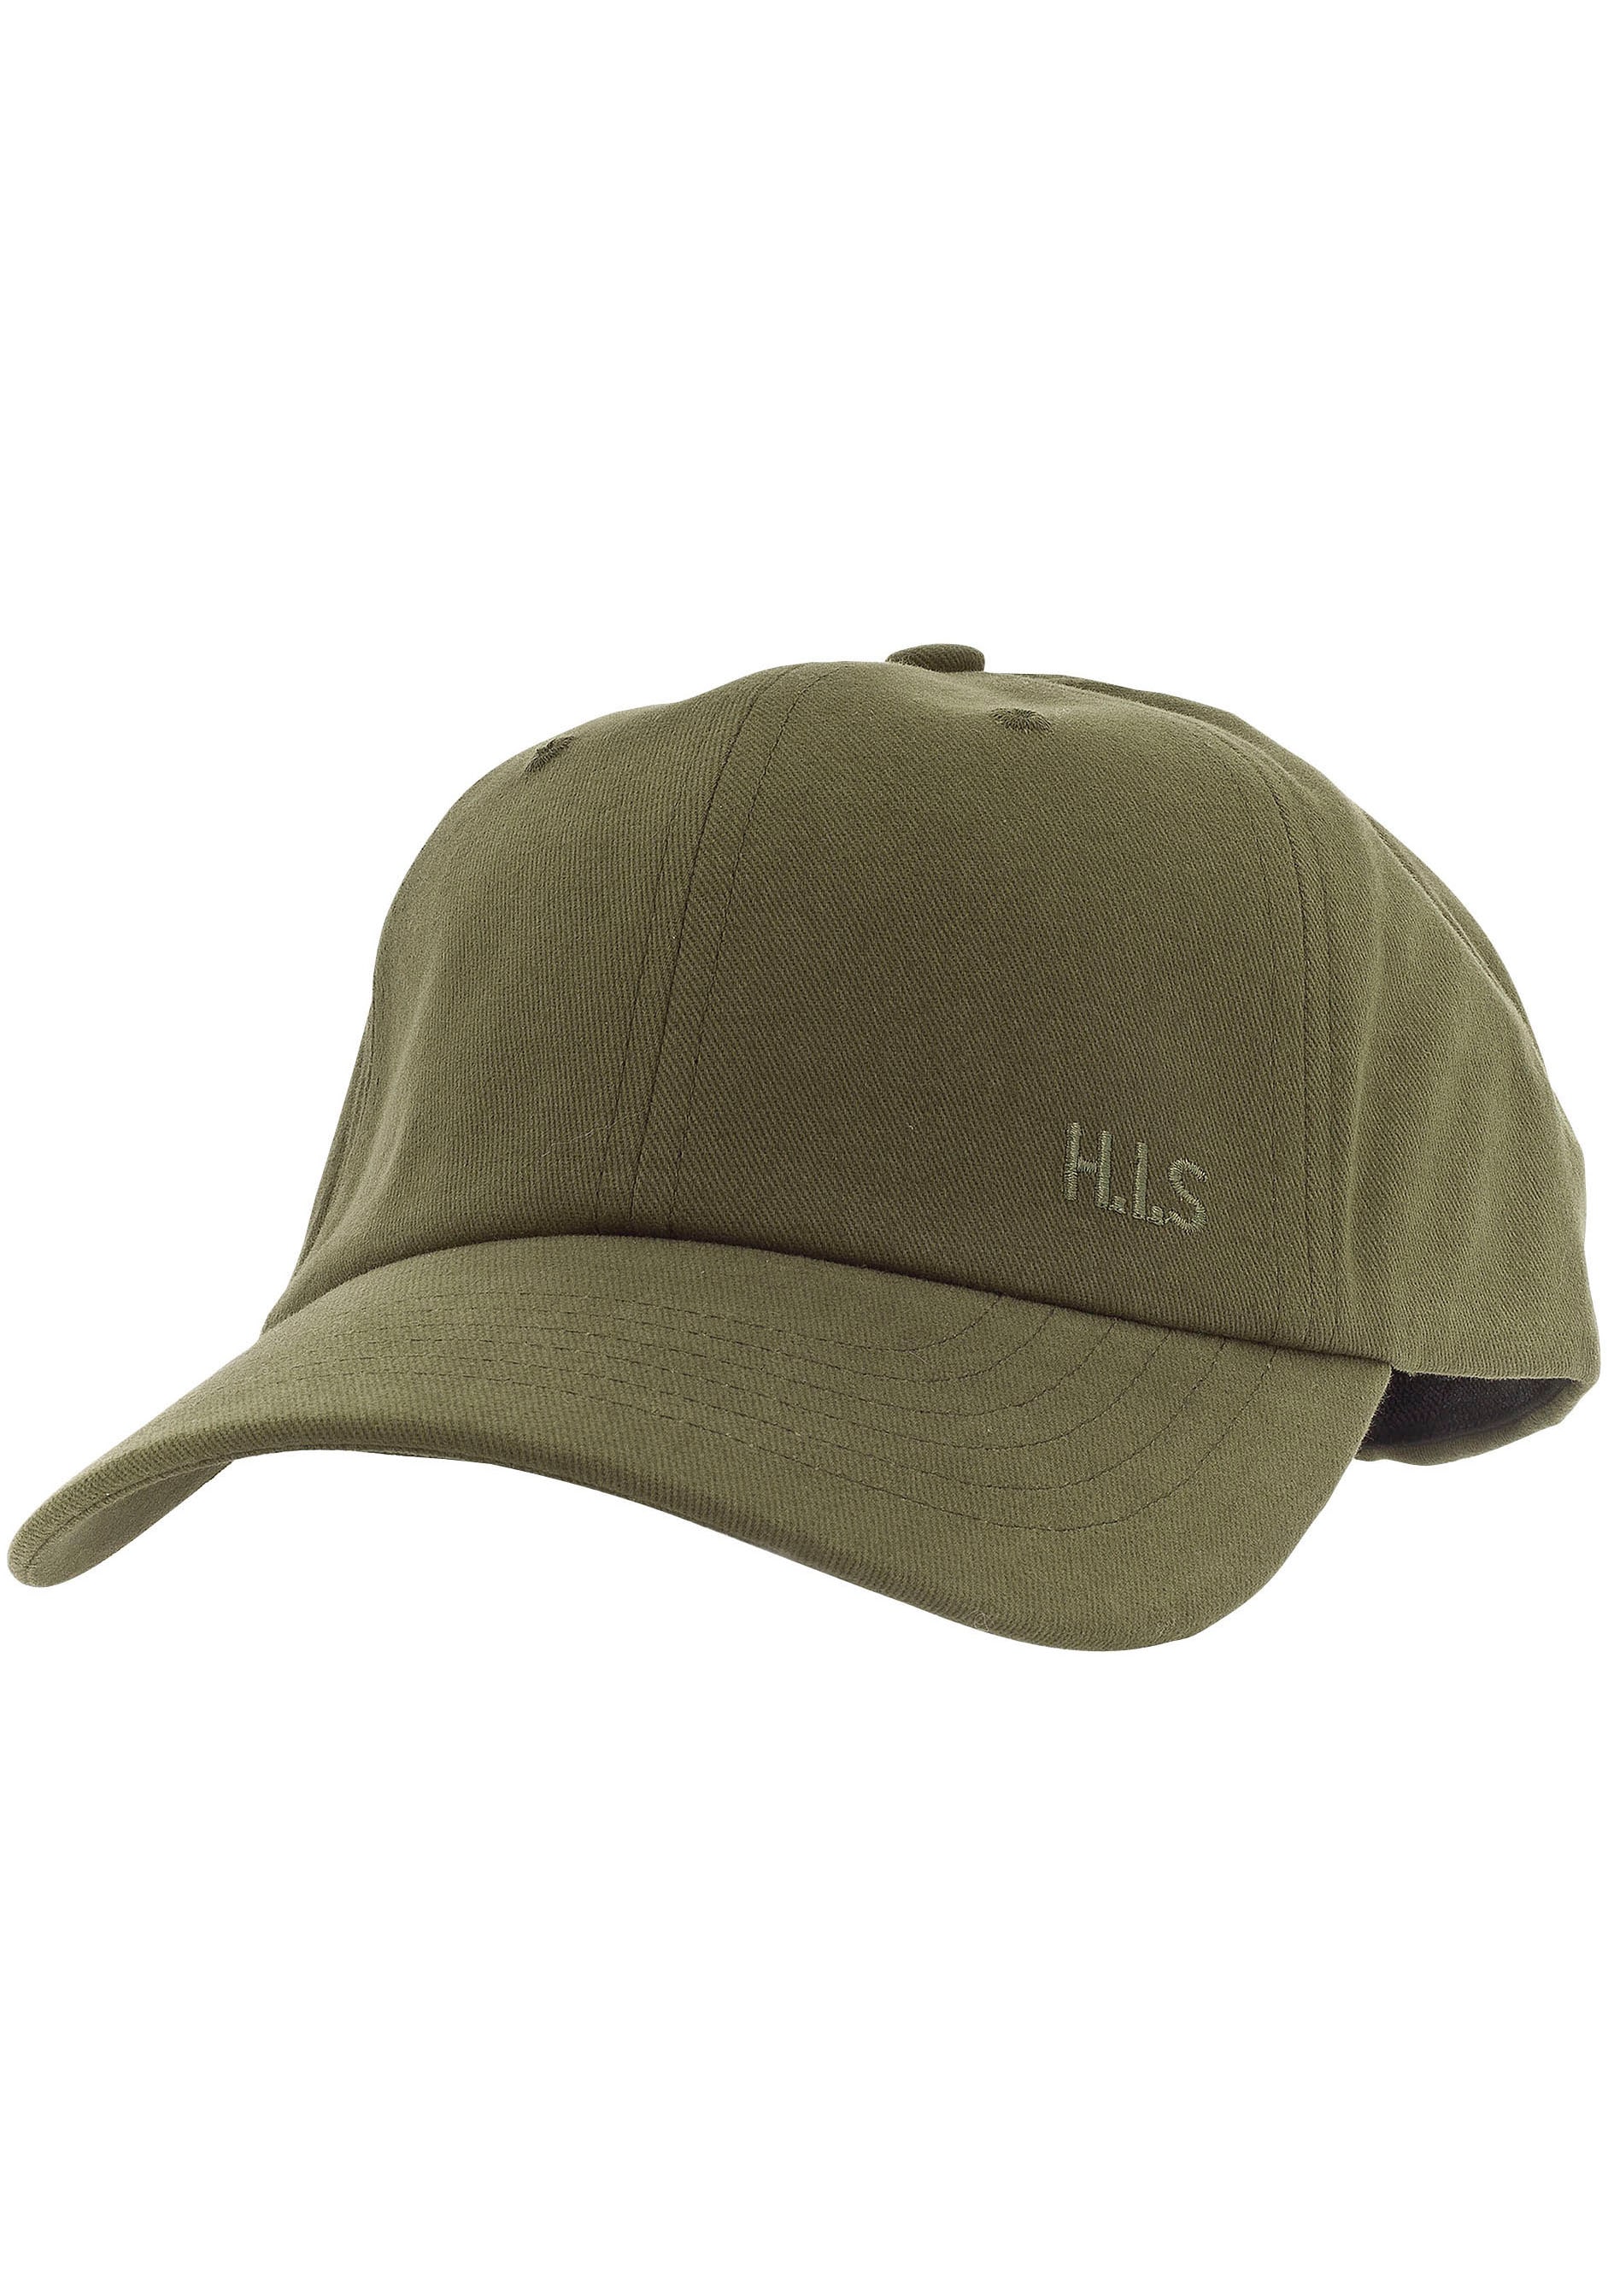 H.I.S Baseball Cap, Baumwollcap mit leichten Verwaschungen und H.I.S. Stickerei